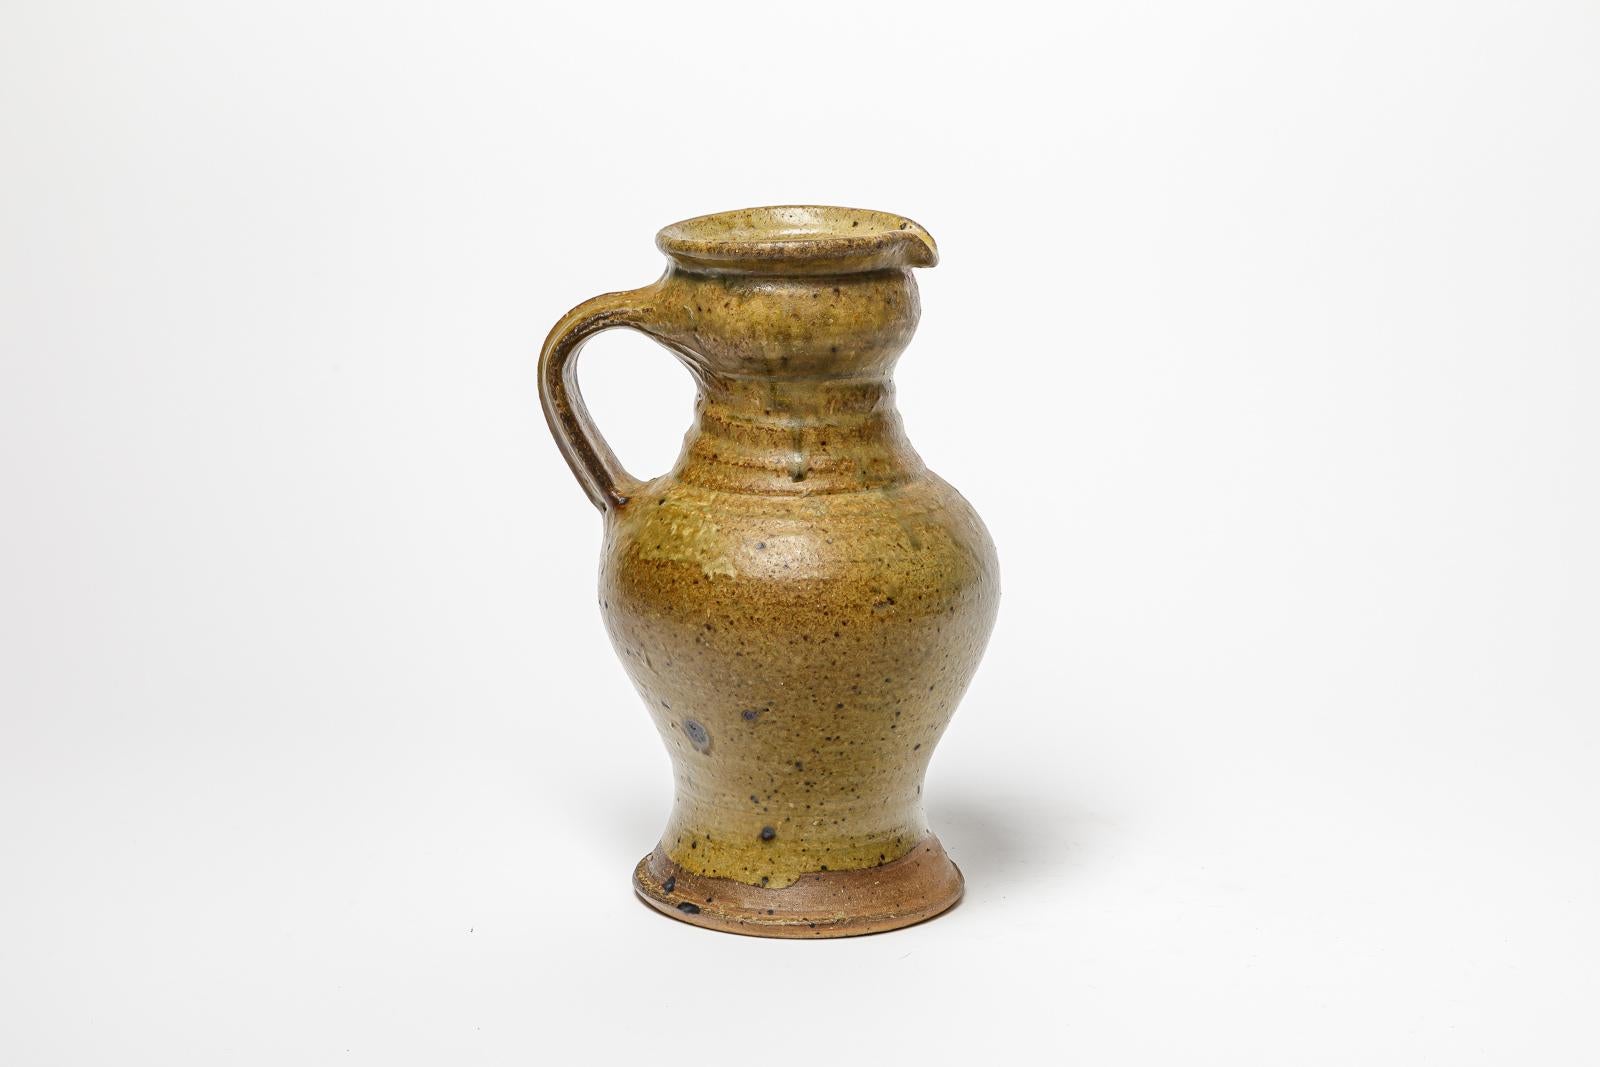 Glazed stoneware pitcher by Pierre Digan.
Artist monogram under the base. Circa 1970-1980. 
H : 11.8’ x 7.5’ x 6.3’ inches.